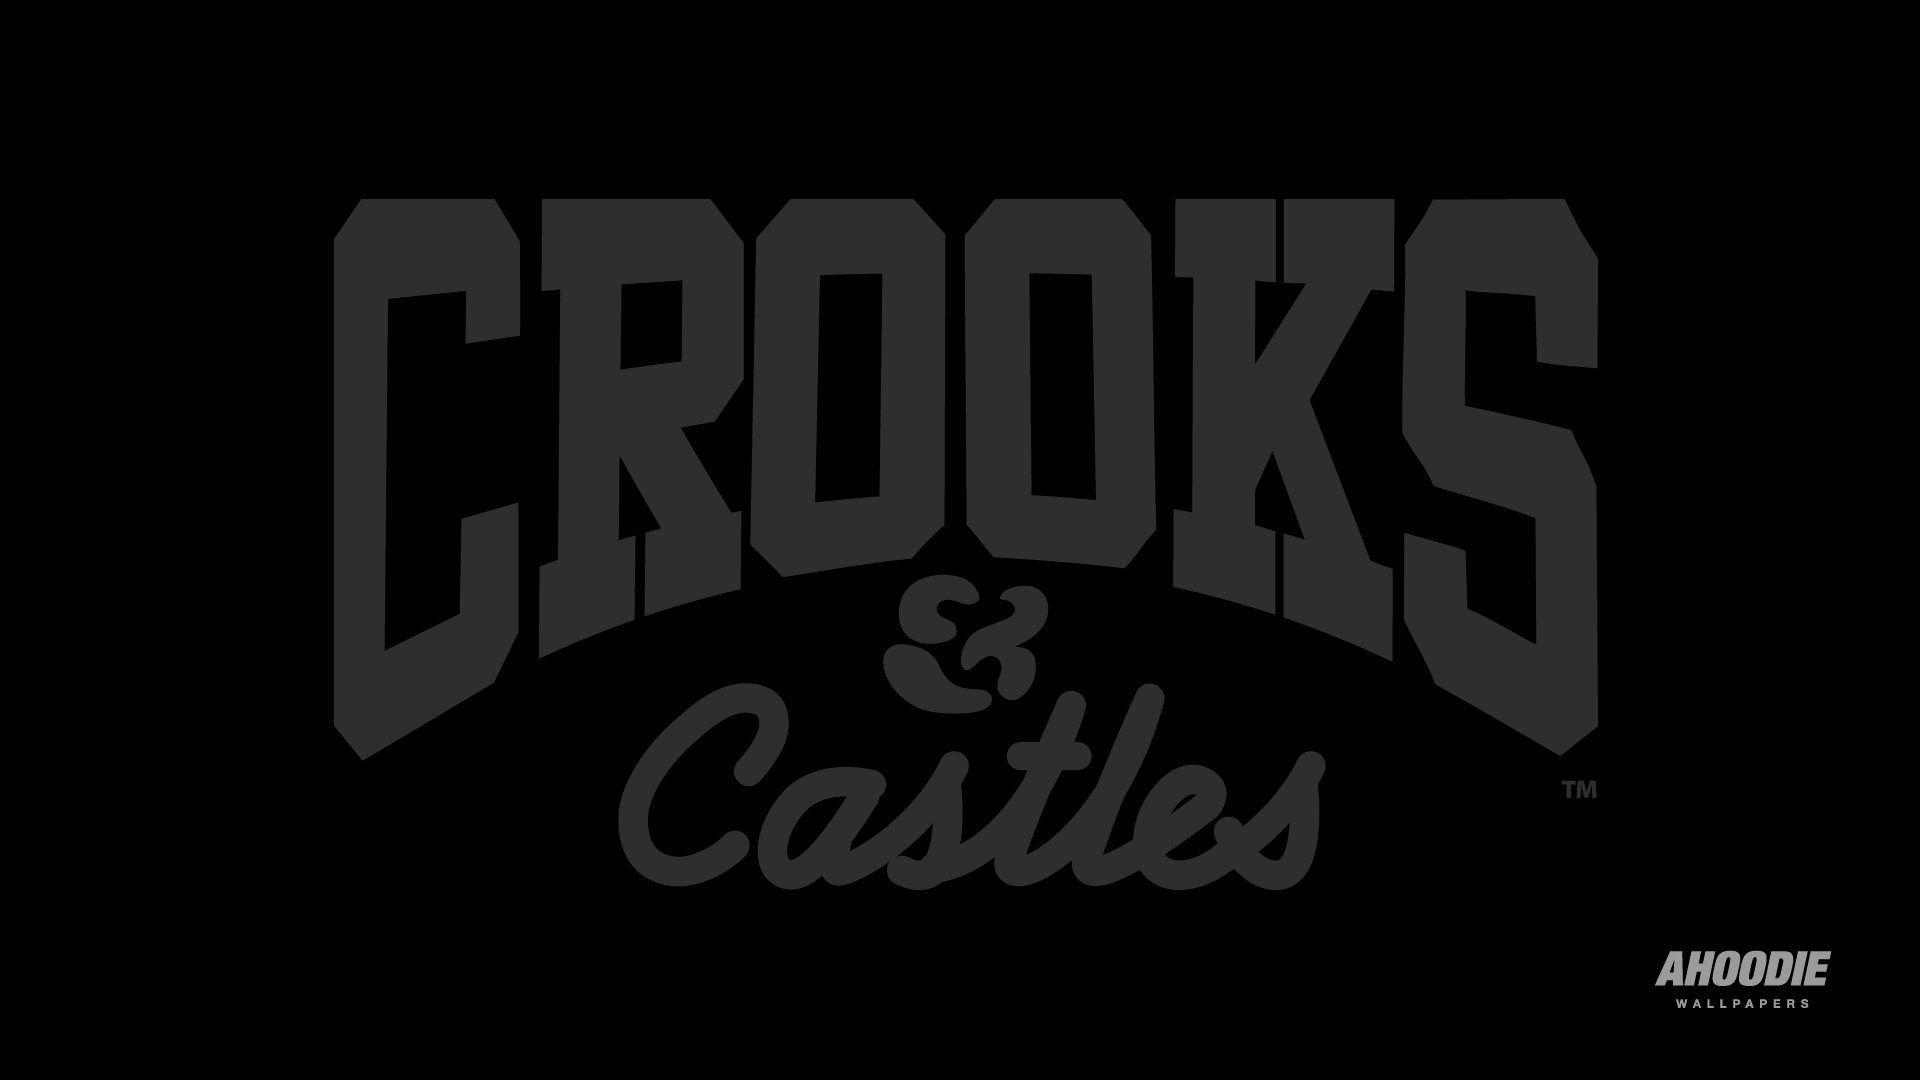 castles crooks desktop rapper wallpaper gallery ahoodie